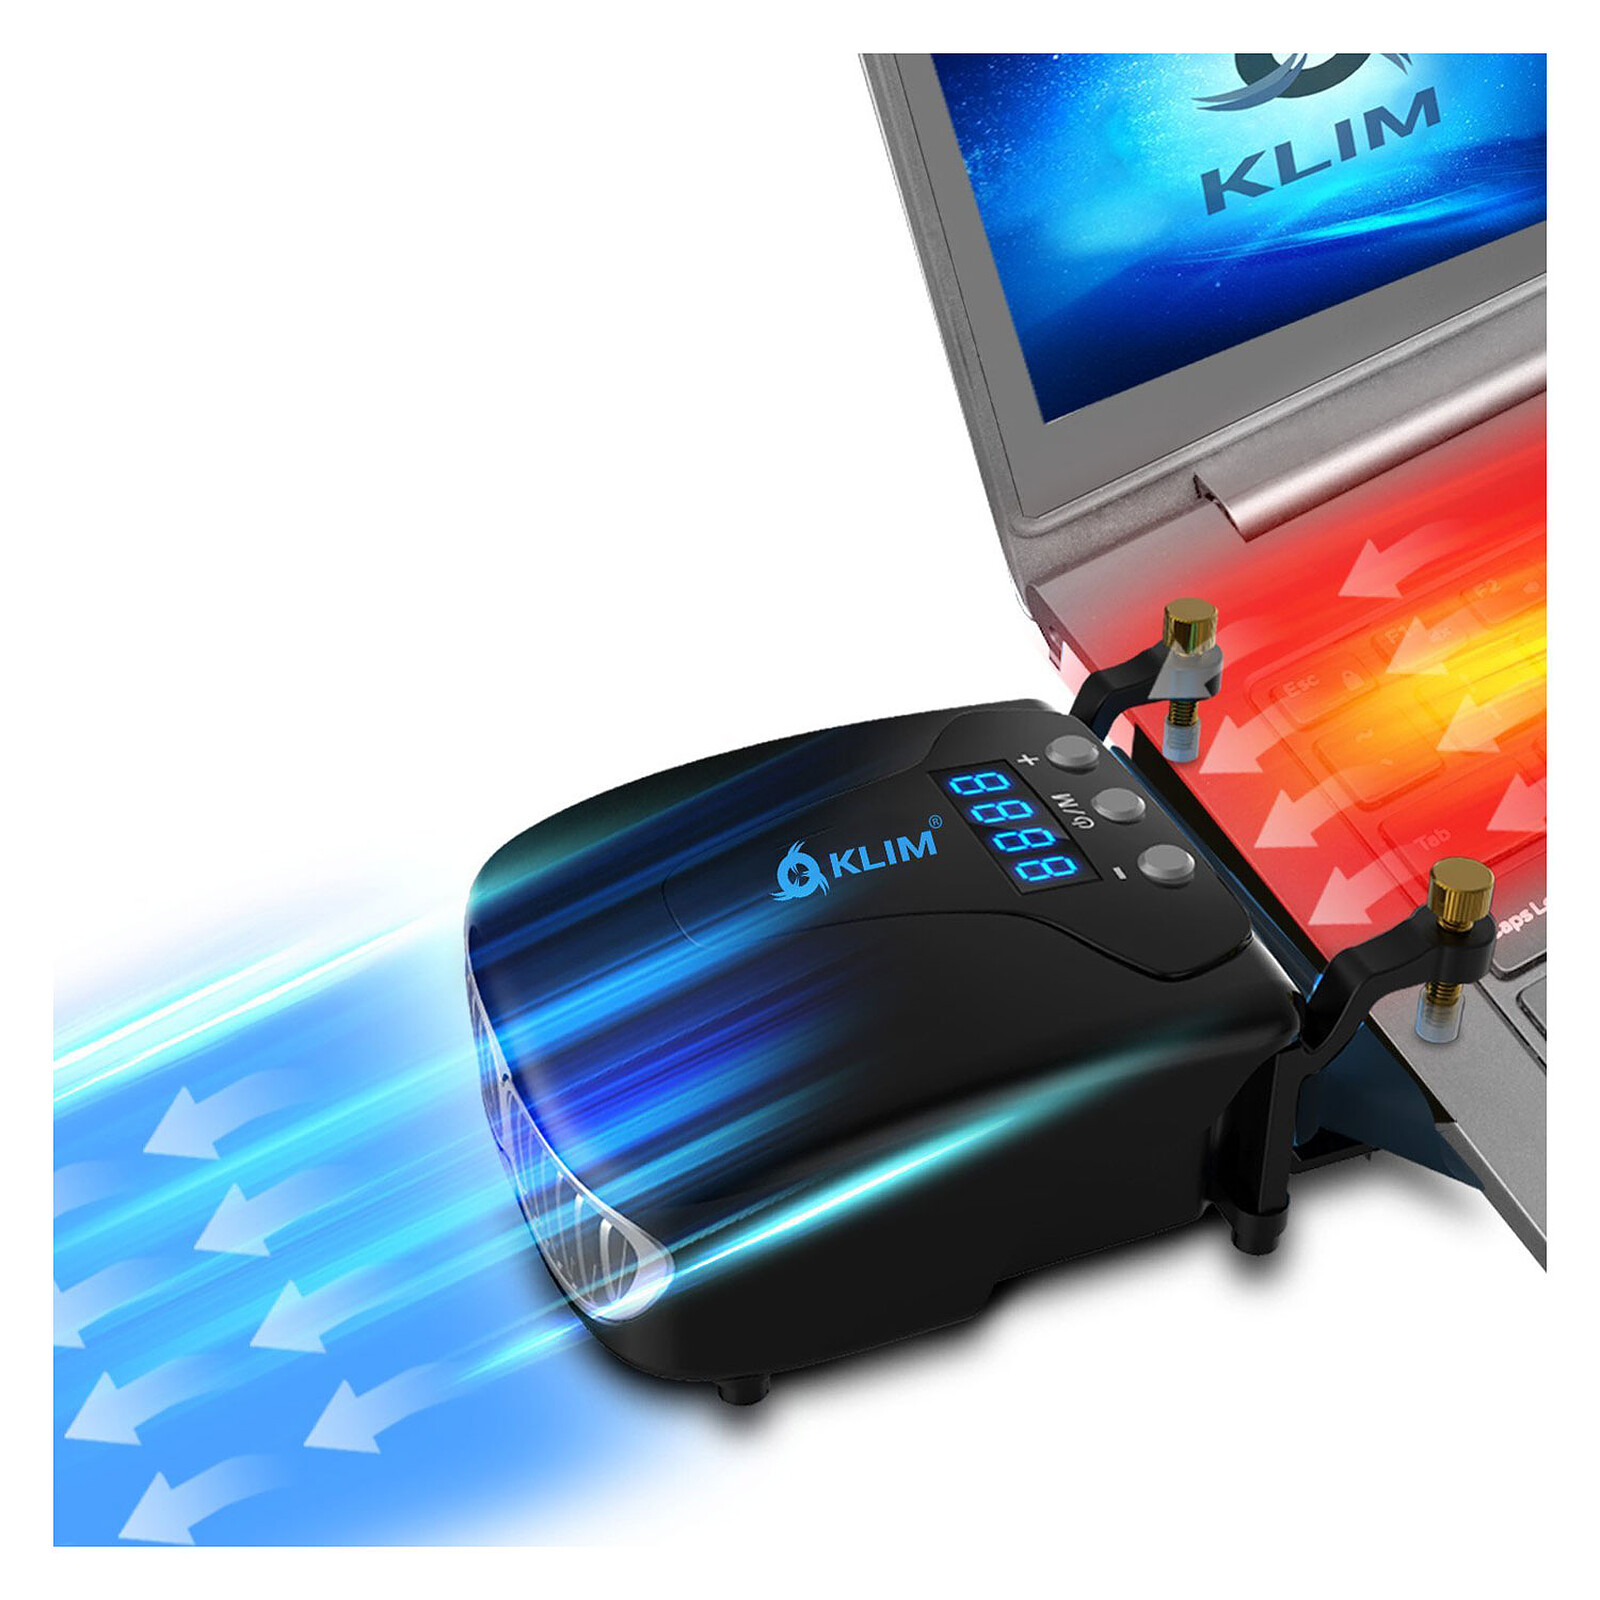 Advance AirStream Pro - Ventilateur PC portable - Garantie 3 ans LDLC